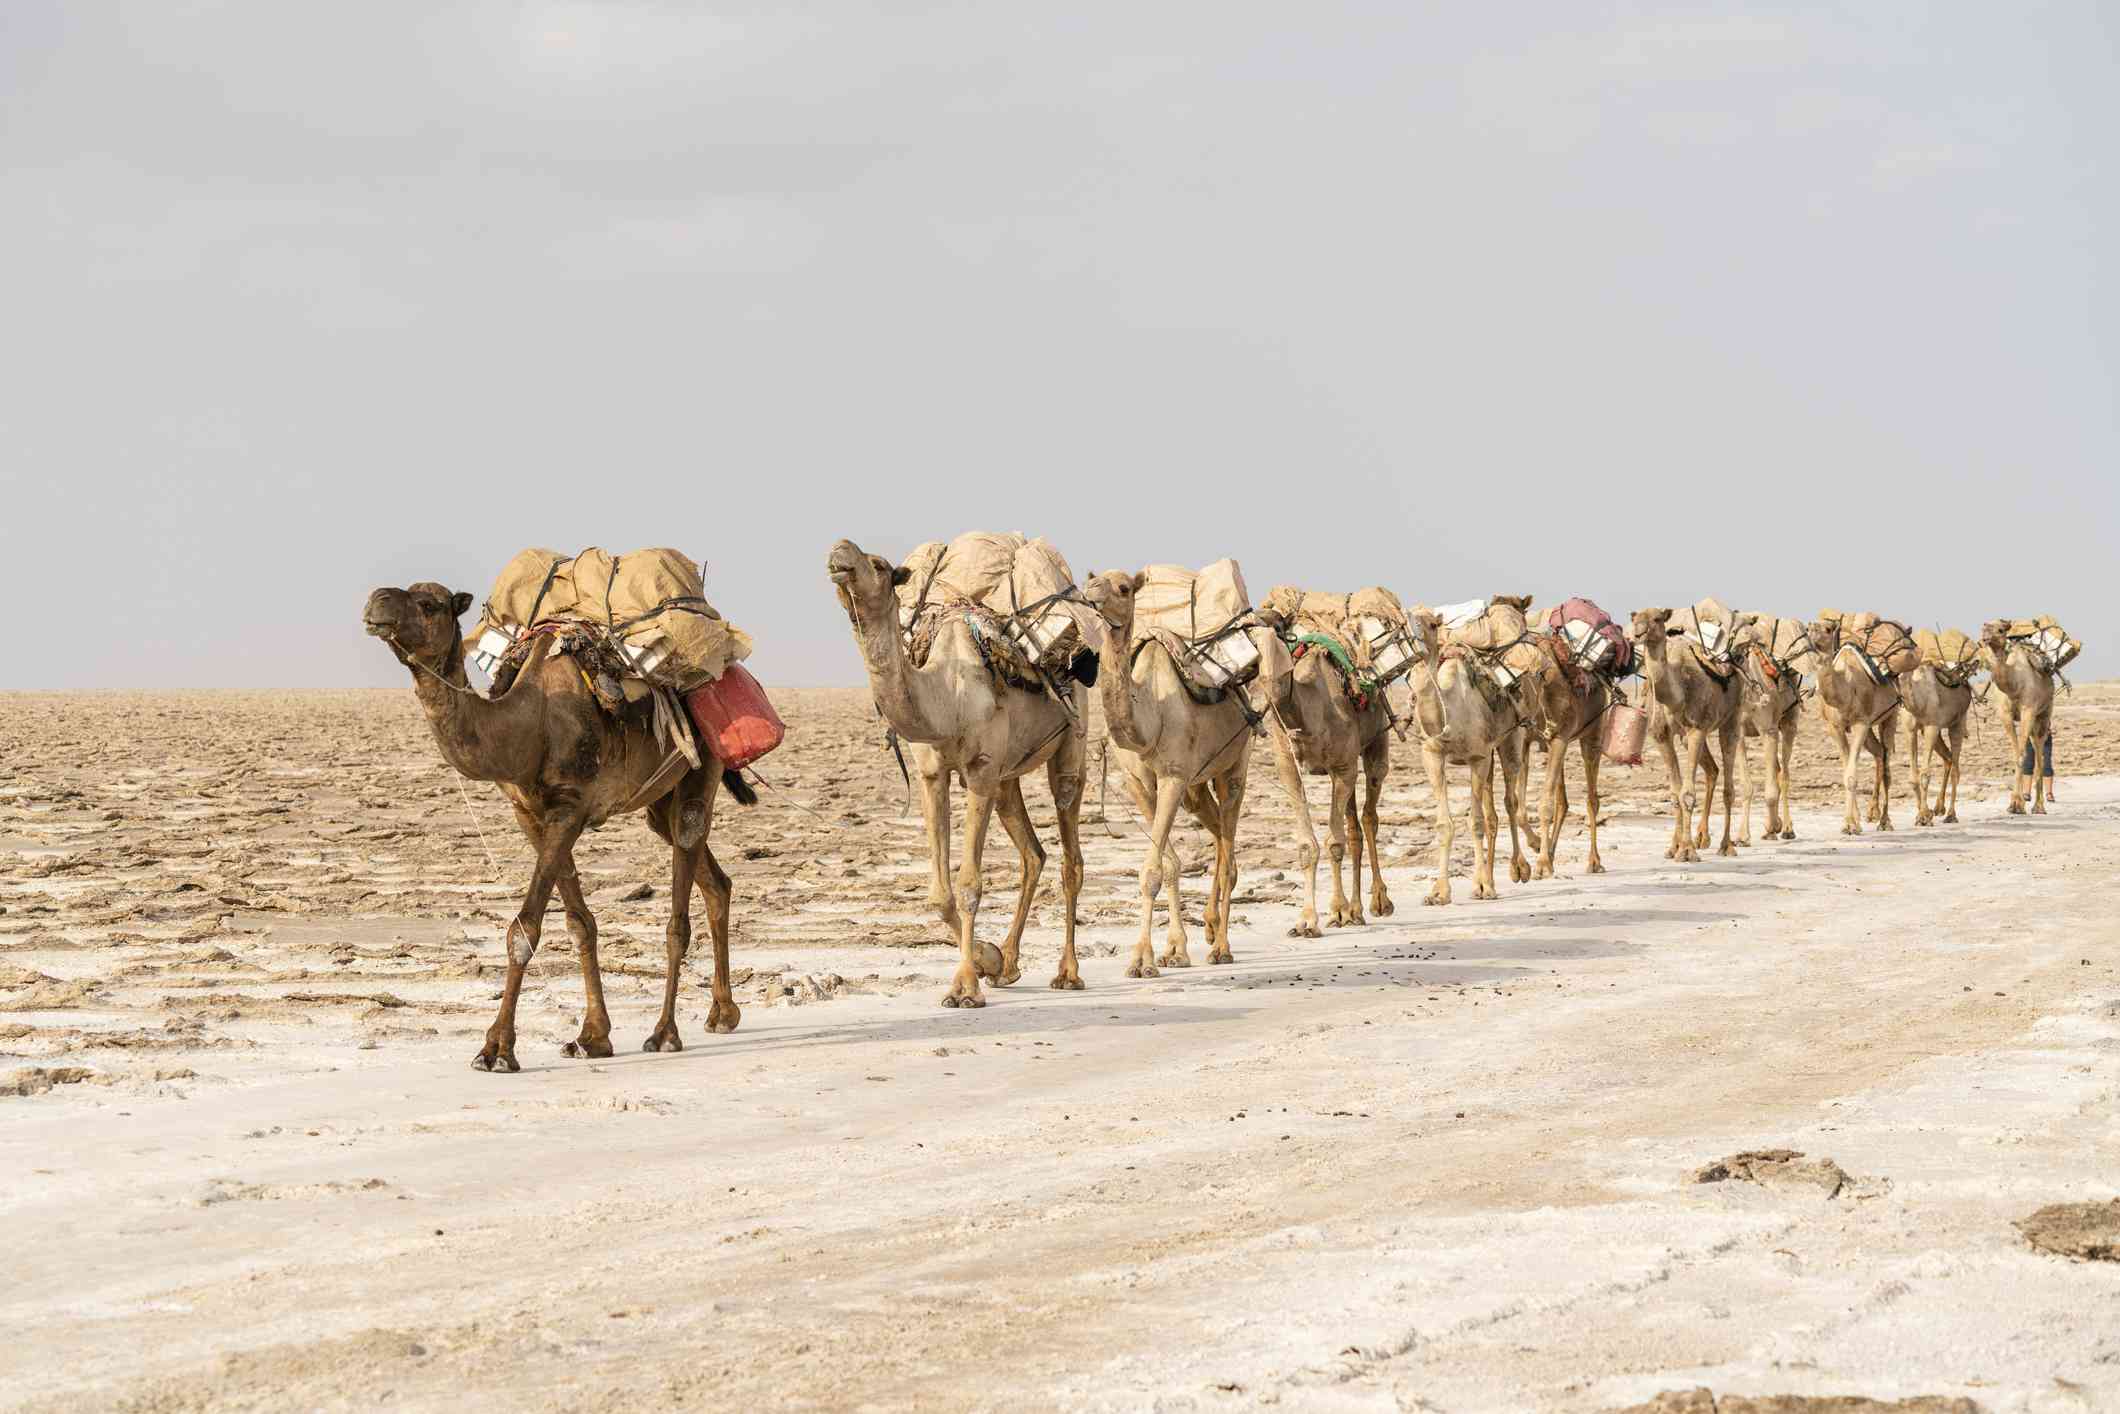 caravana de camellos cargando materiales a sus espaldas por el desierto